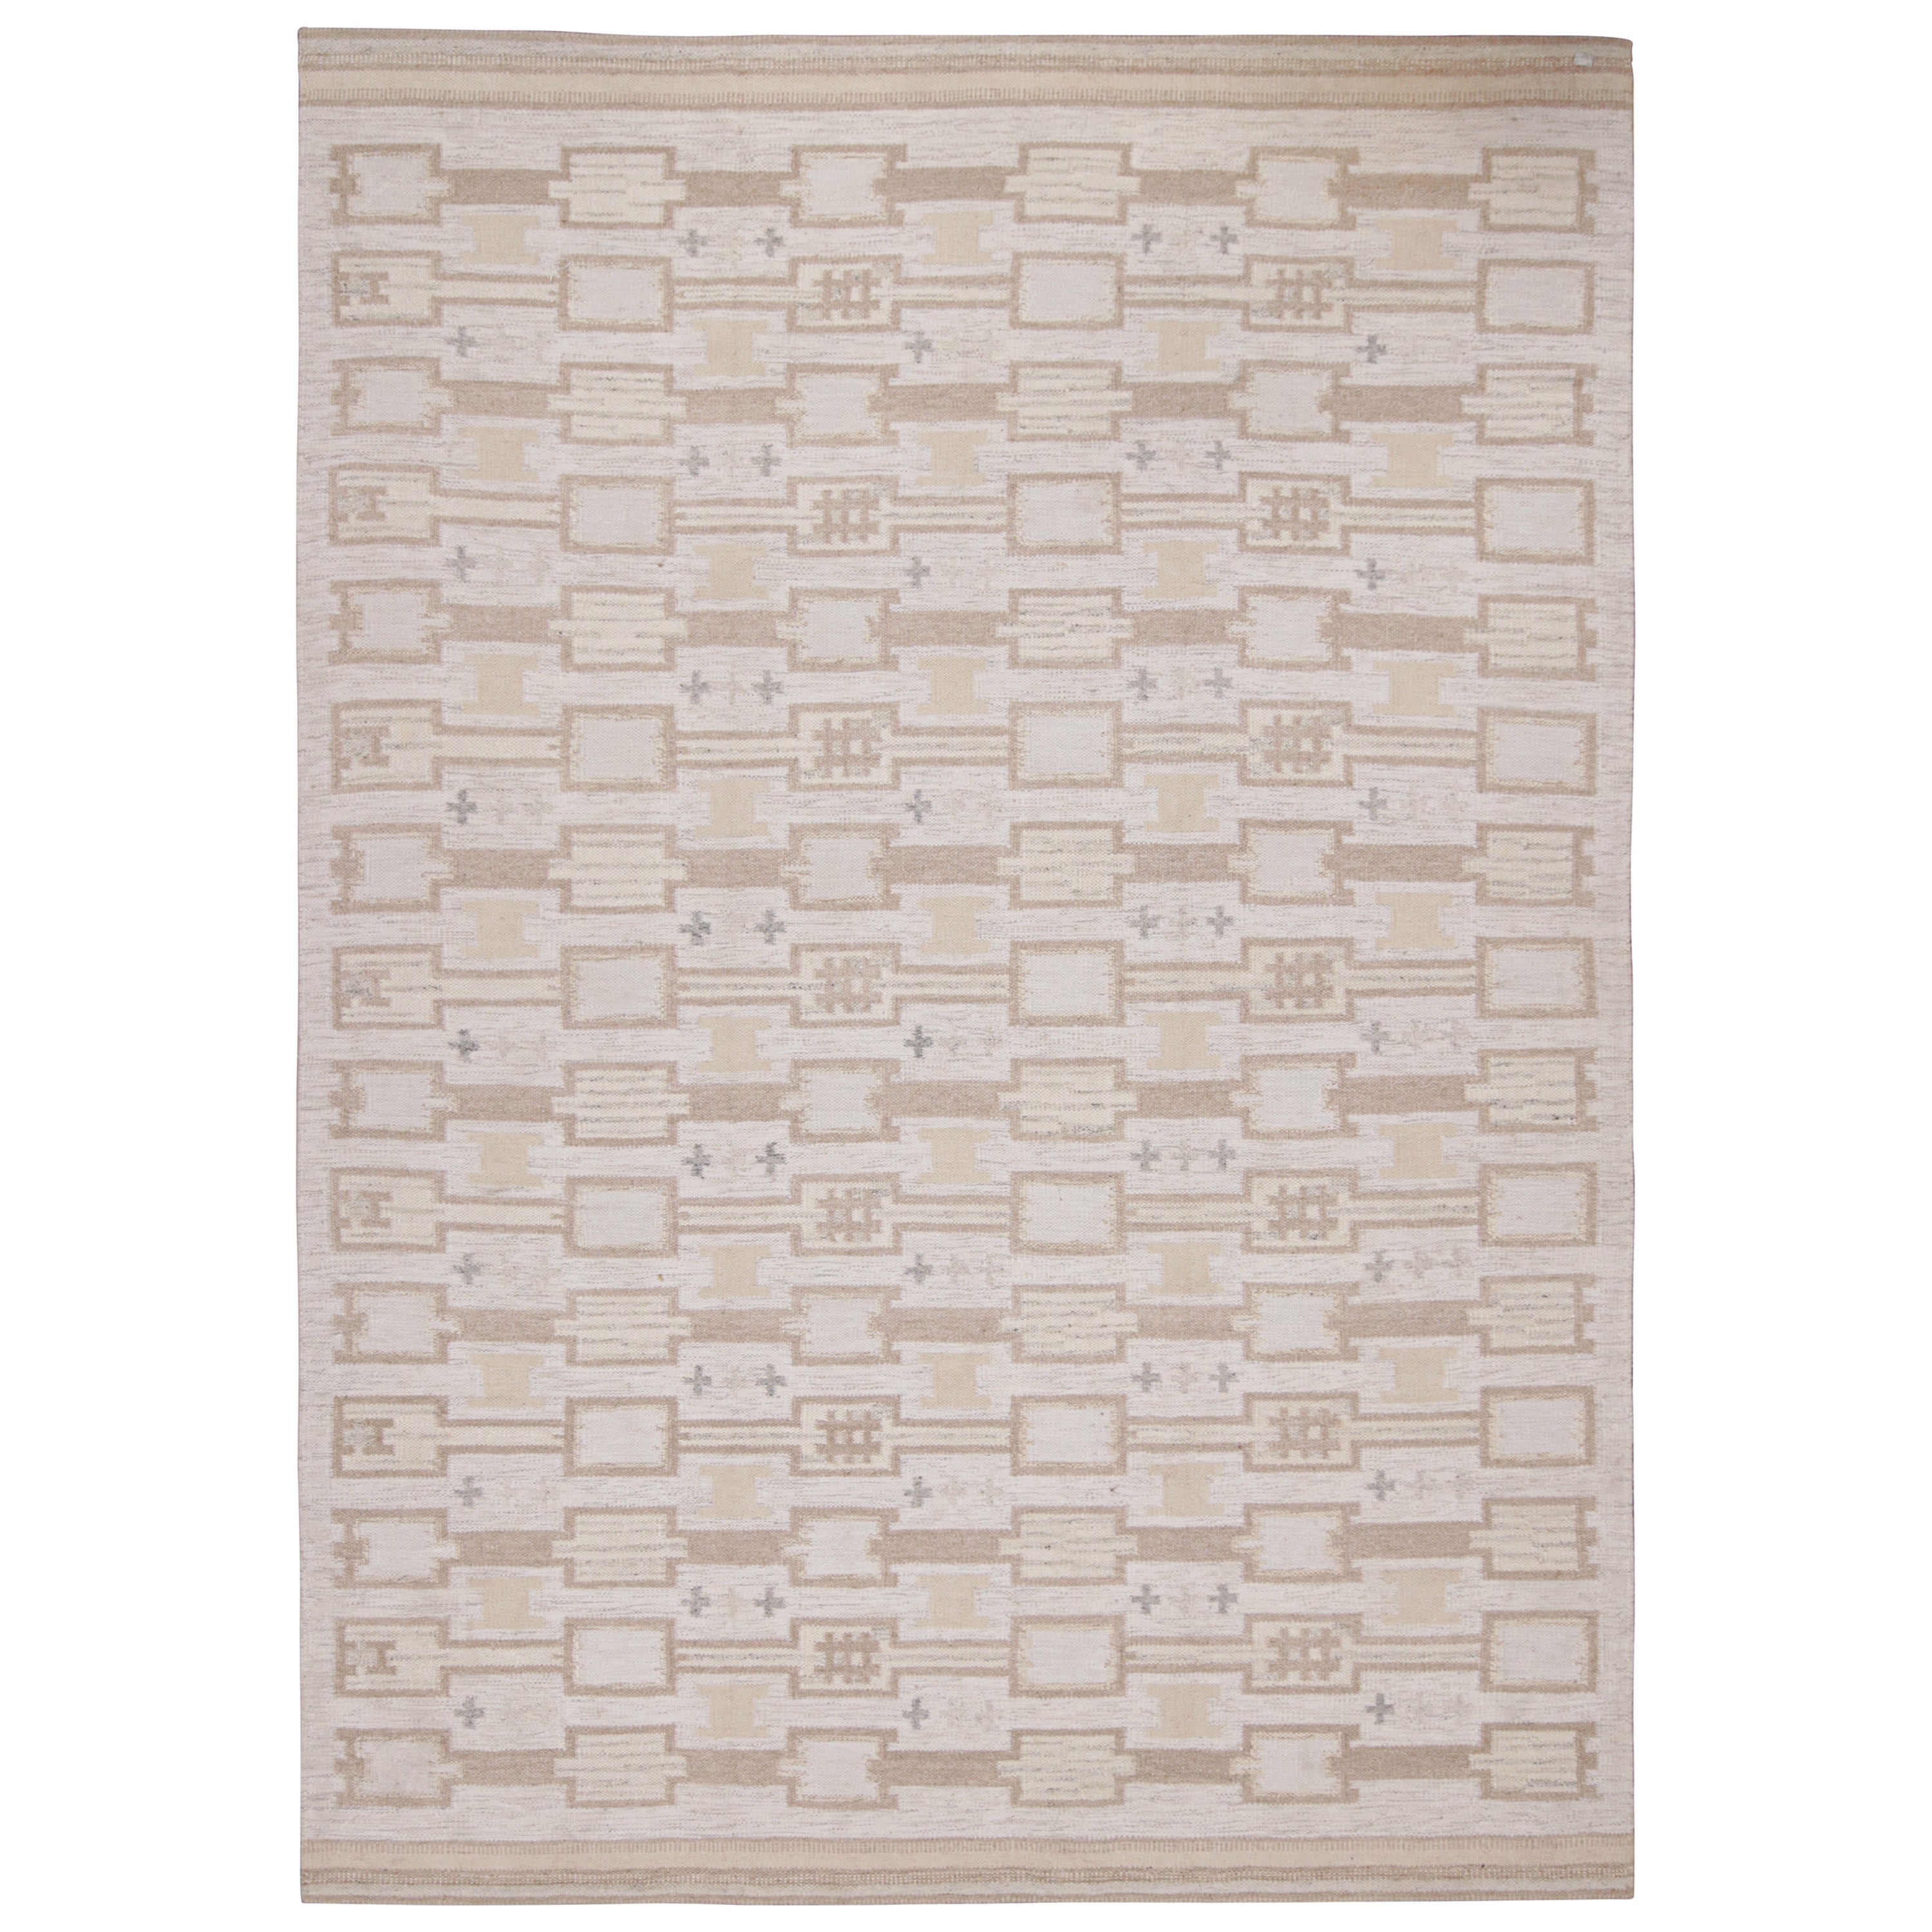 Rug & Kilim's Scandinavian Style Kilim in White & Beige-Brown Geometric Pattern (Kilim de style scandinave à motif géométrique blanc et beige-brun)